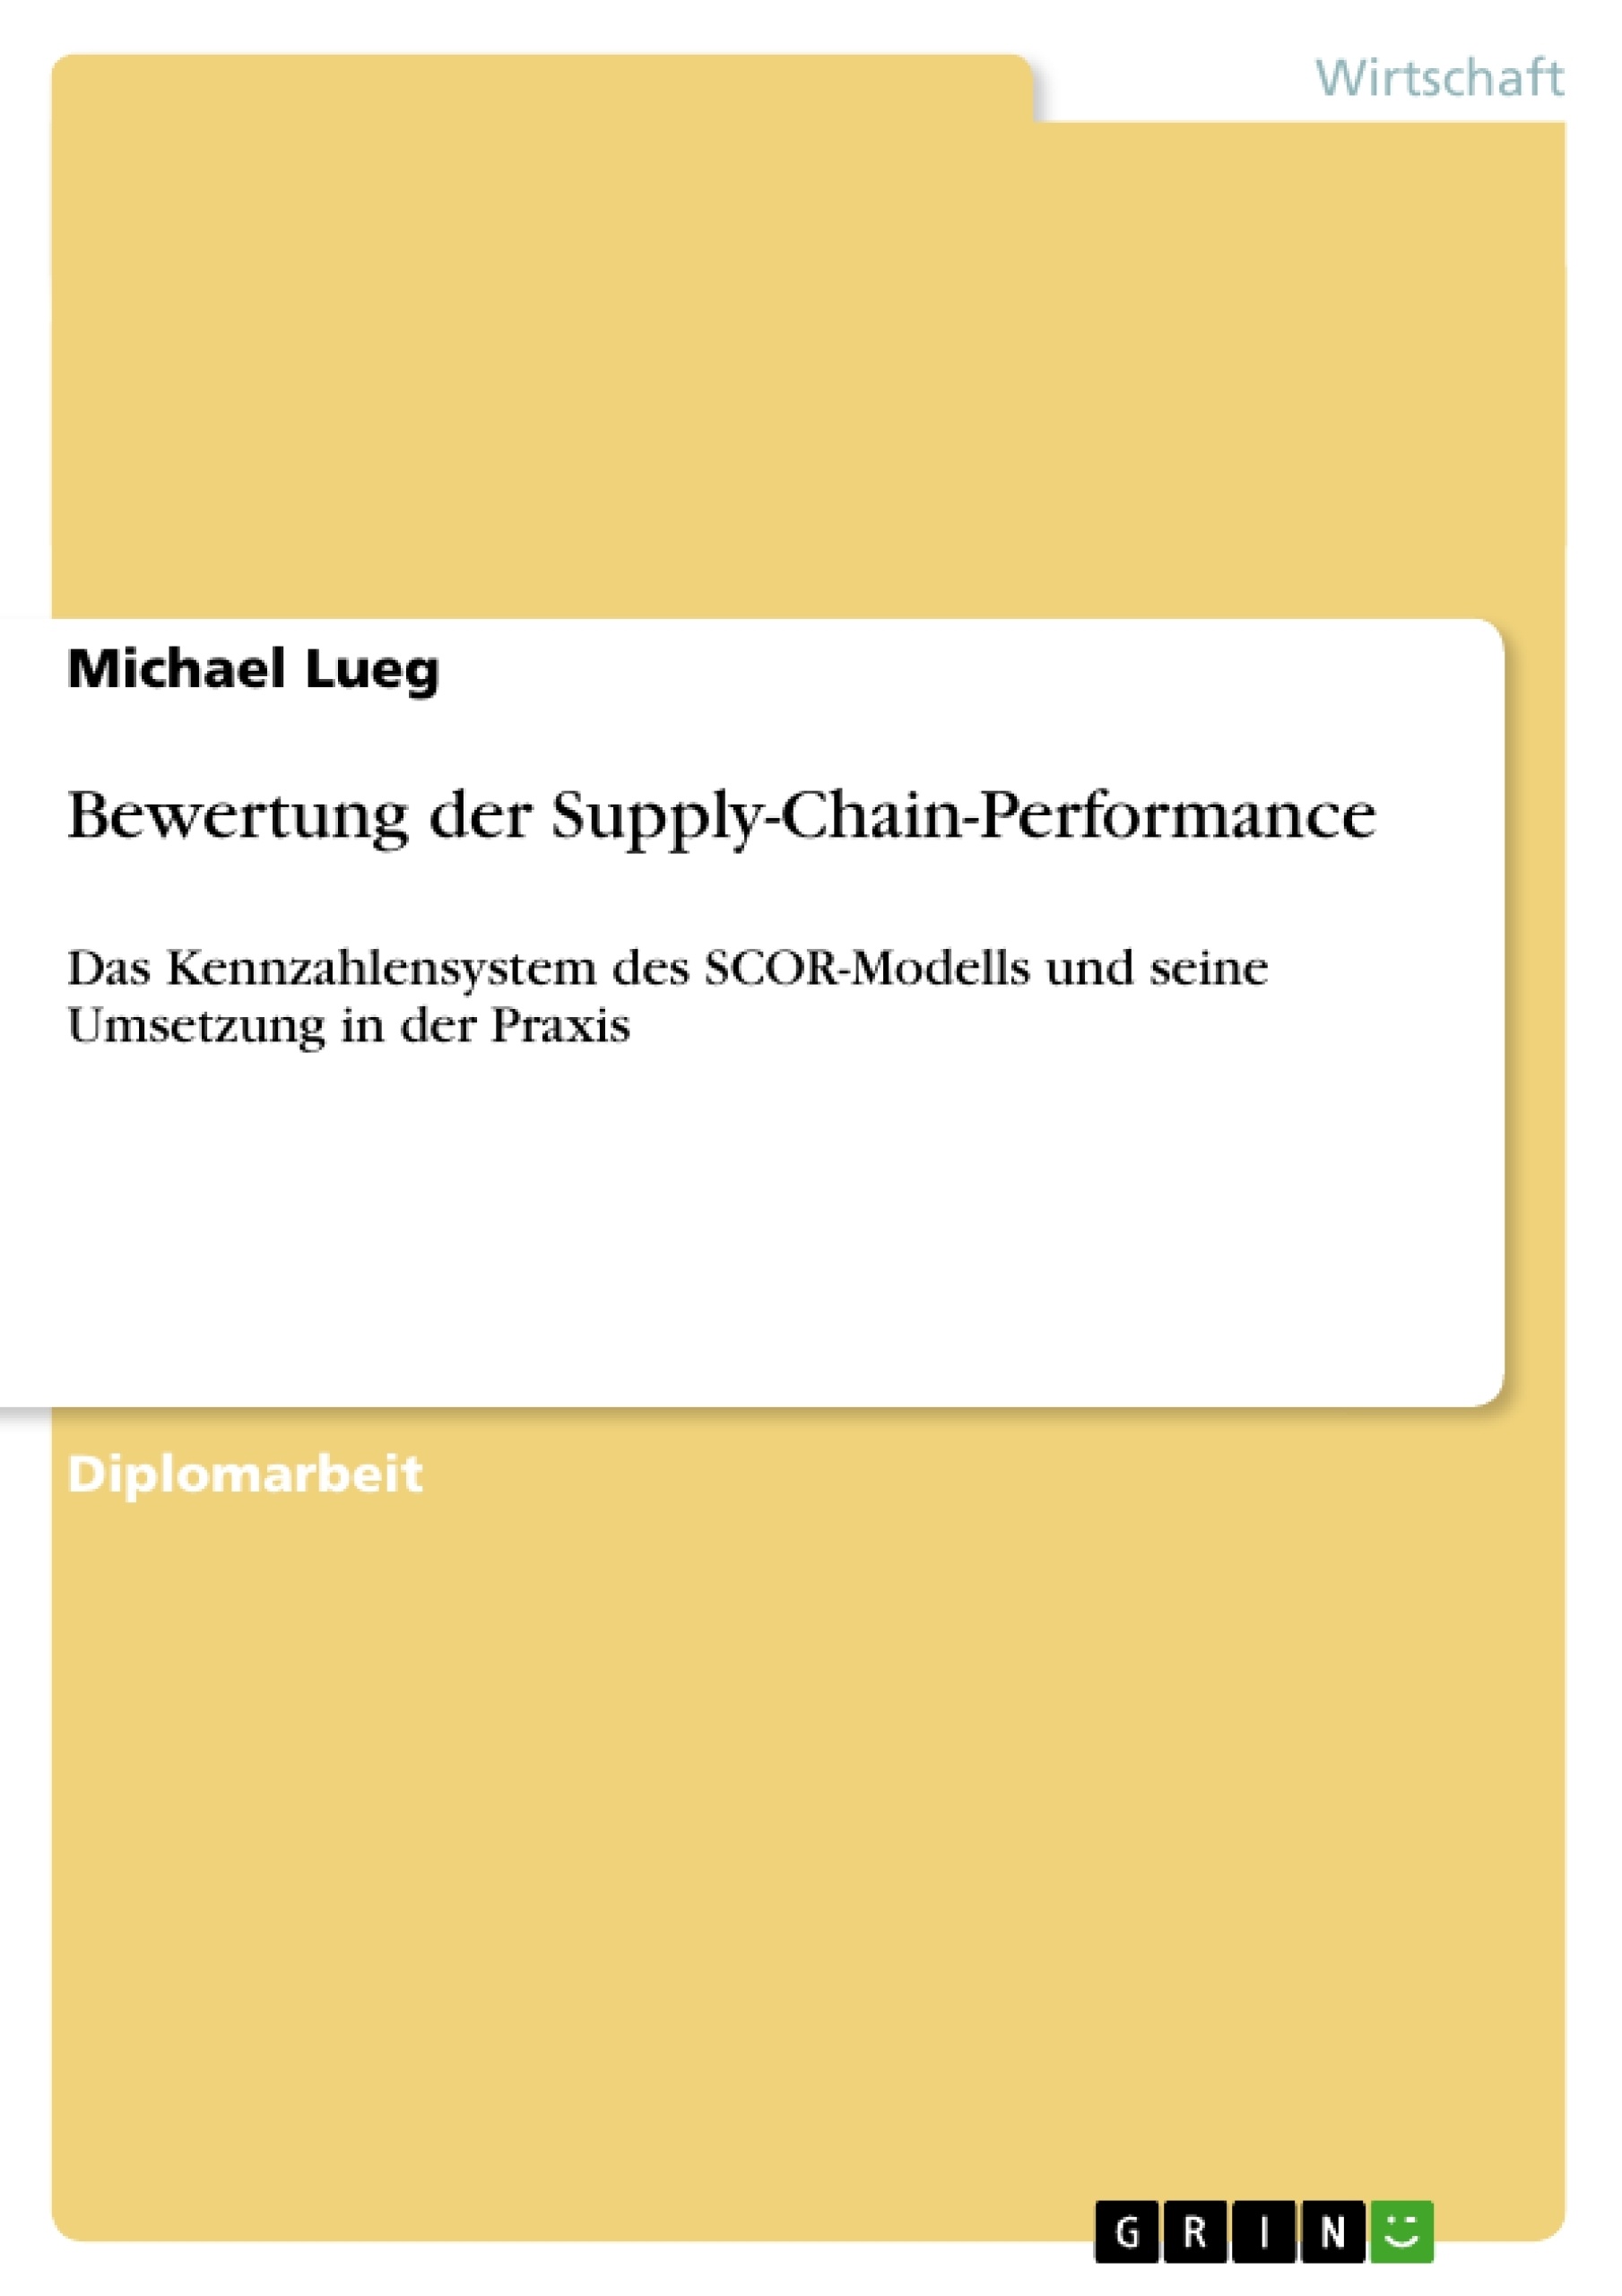 Title: Bewertung der Supply-Chain-Performance